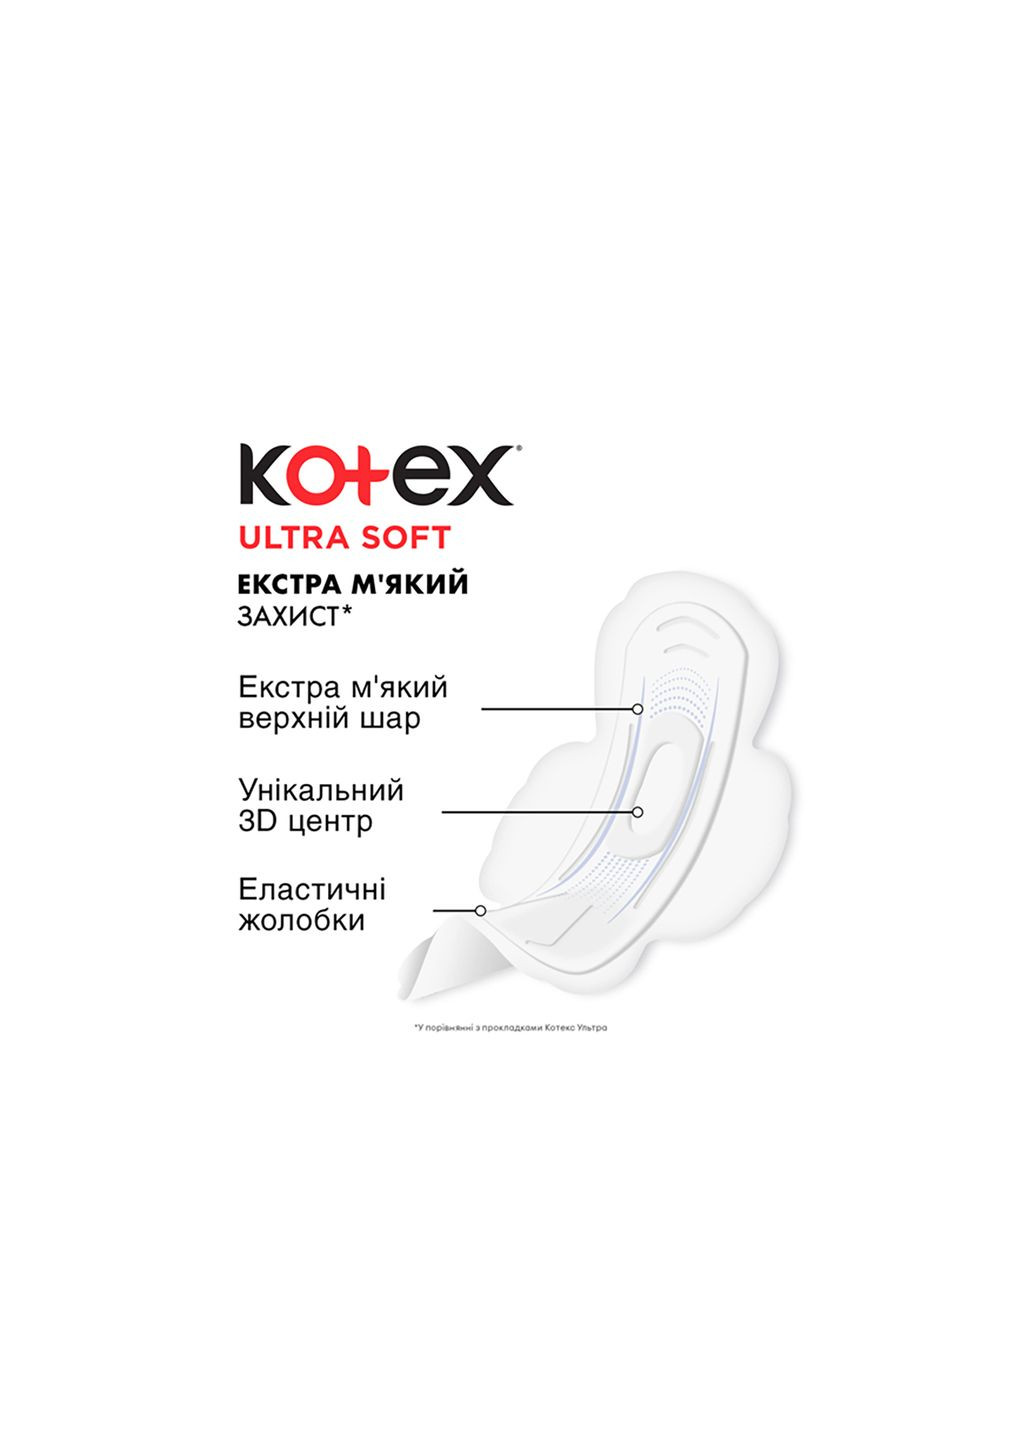 Прокладки Kotex ultra soft super 16 шт. (268145741)